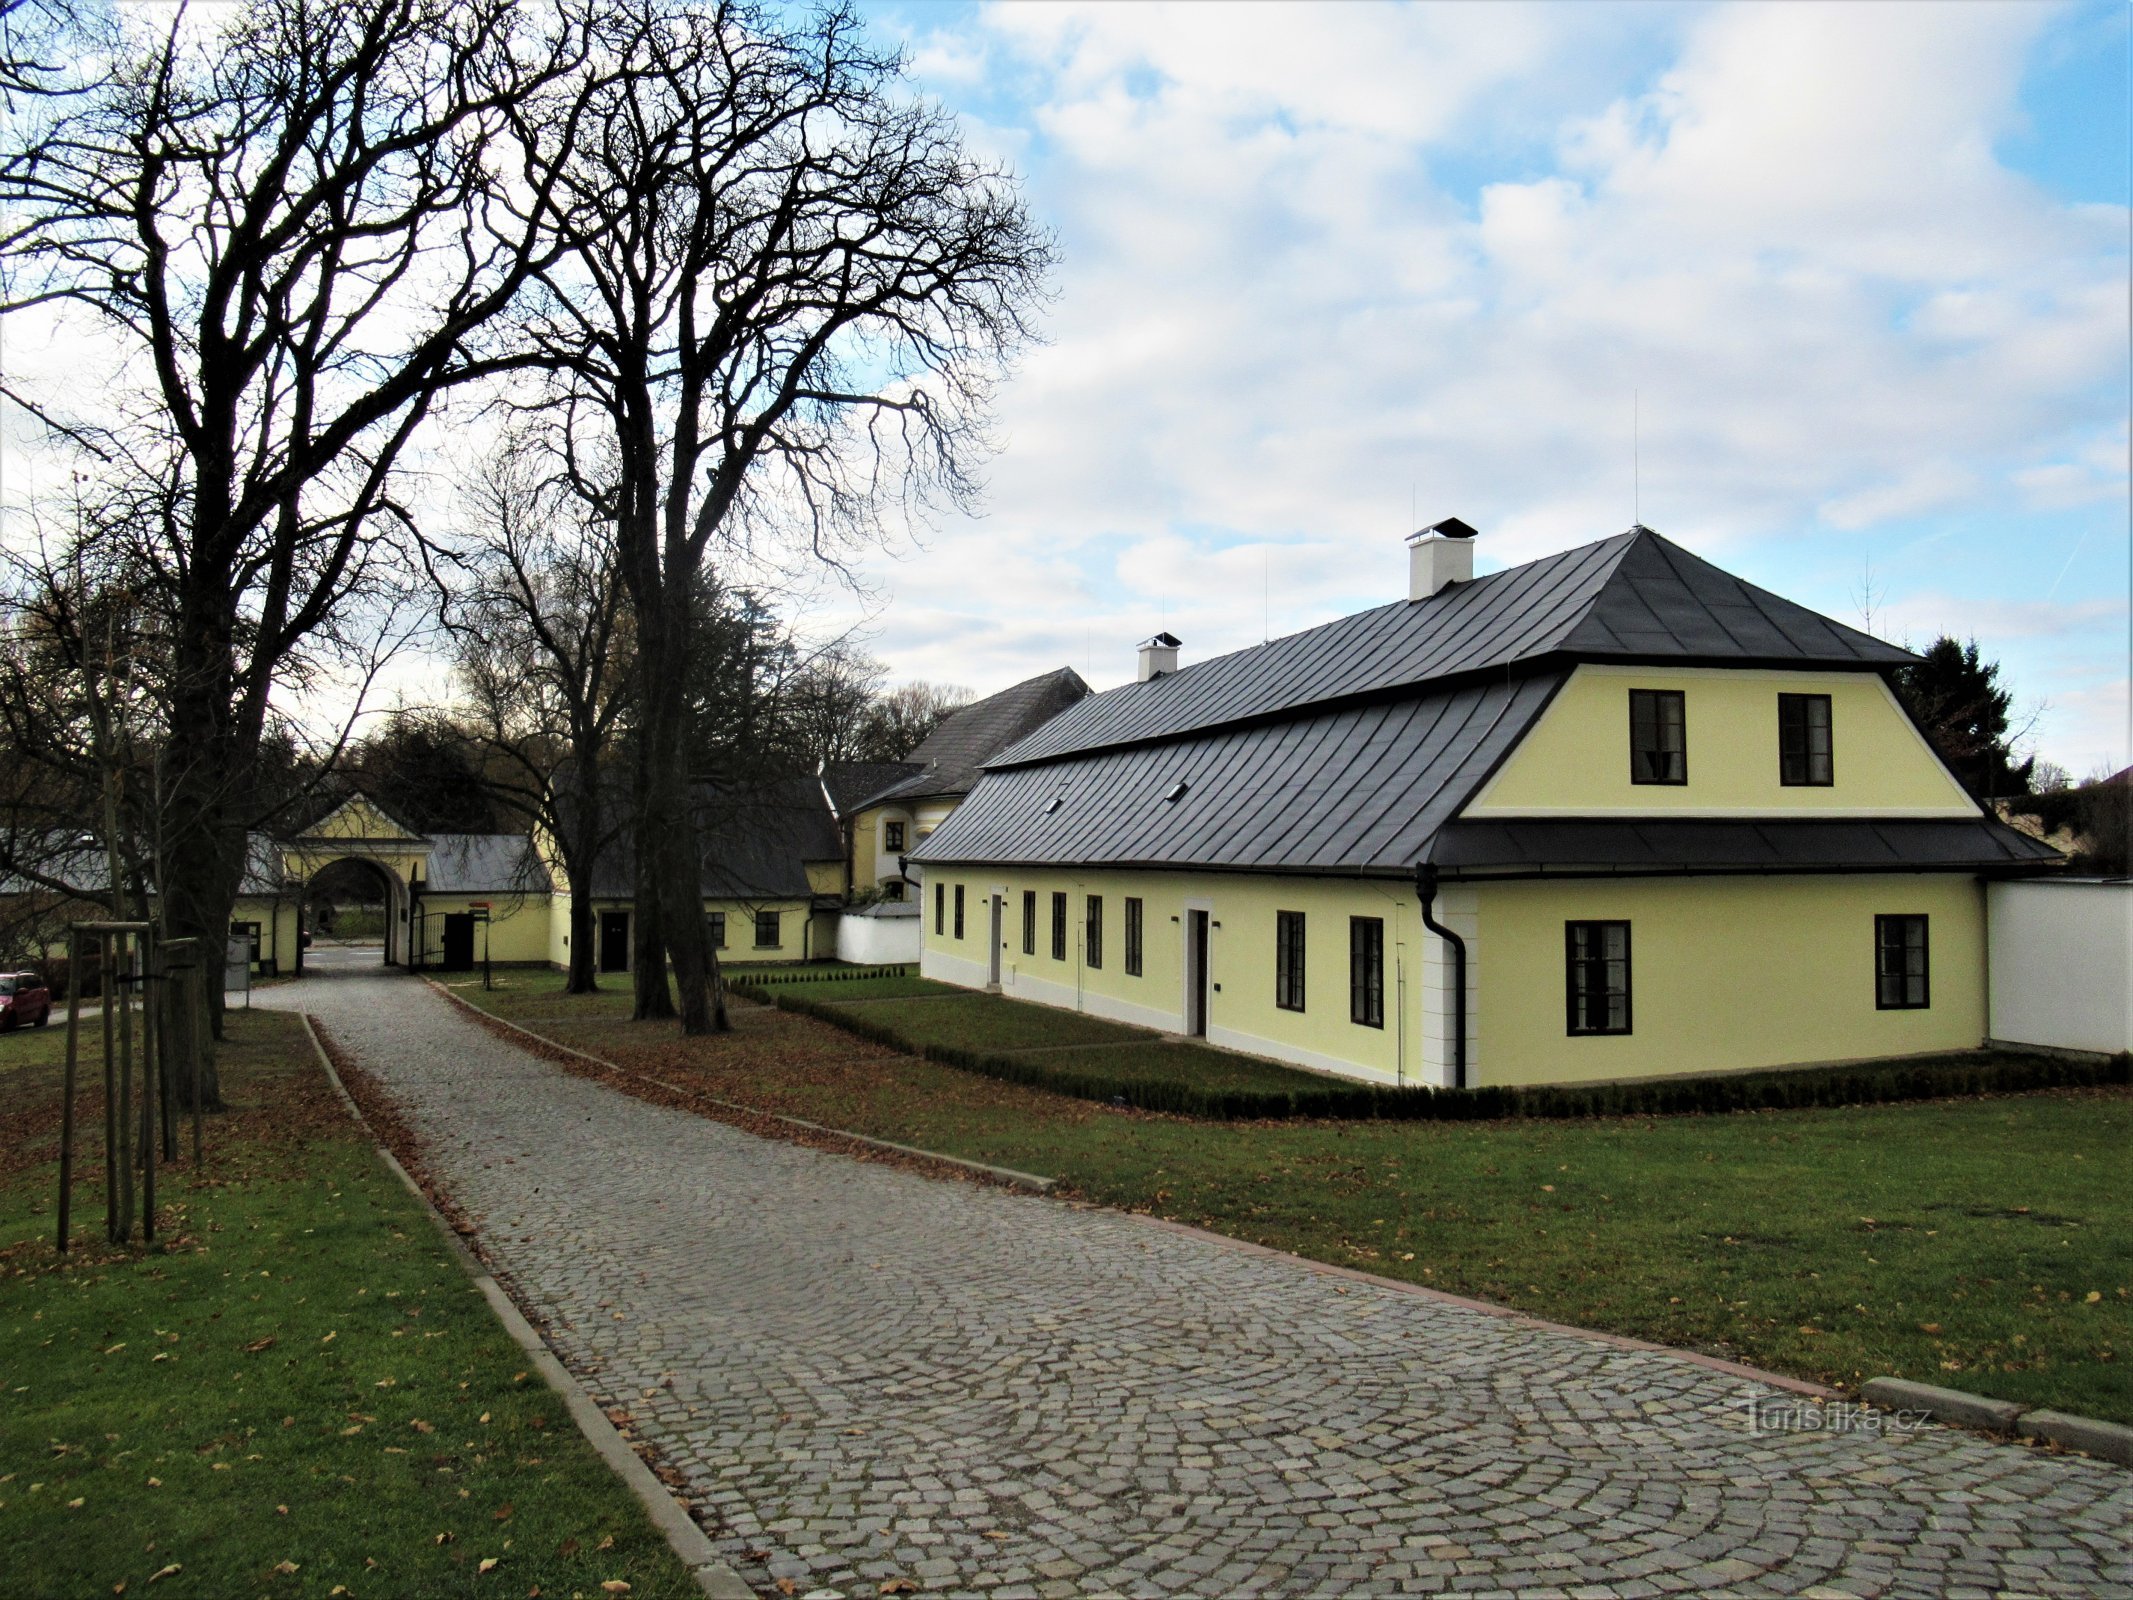 Žďár nad Sázavou - a casa do jardineiro perto do castelo